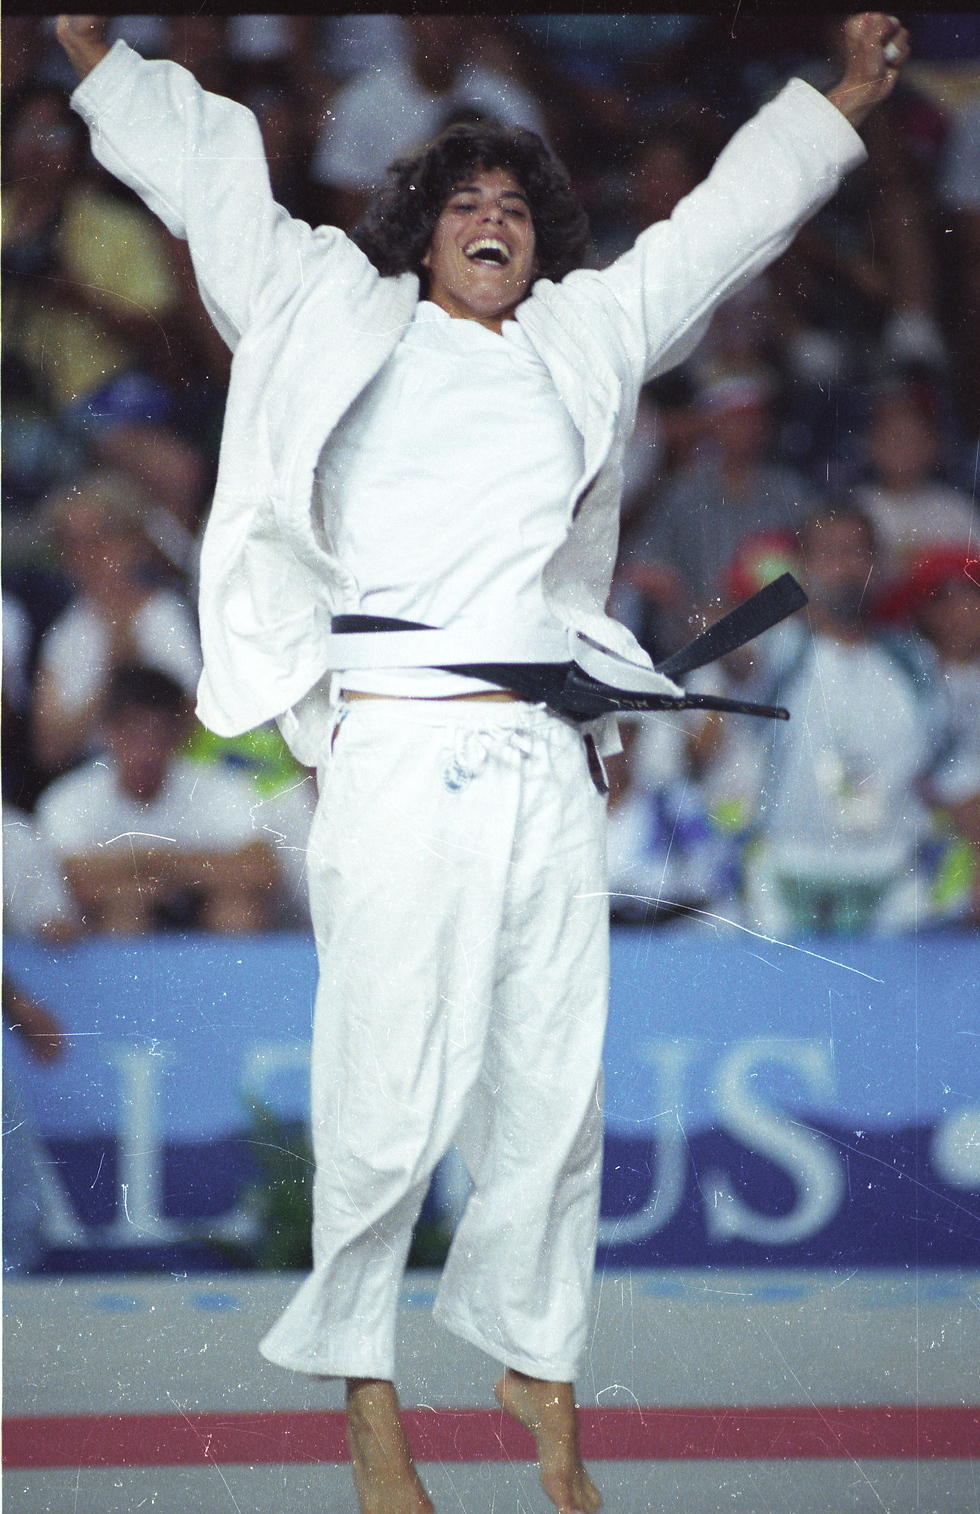 יעל ארד חוגגת לפני 27 שנים באולימפיאדת ברצלונה (צילום: יוסי רוט) (צילום: יוסי רוט)